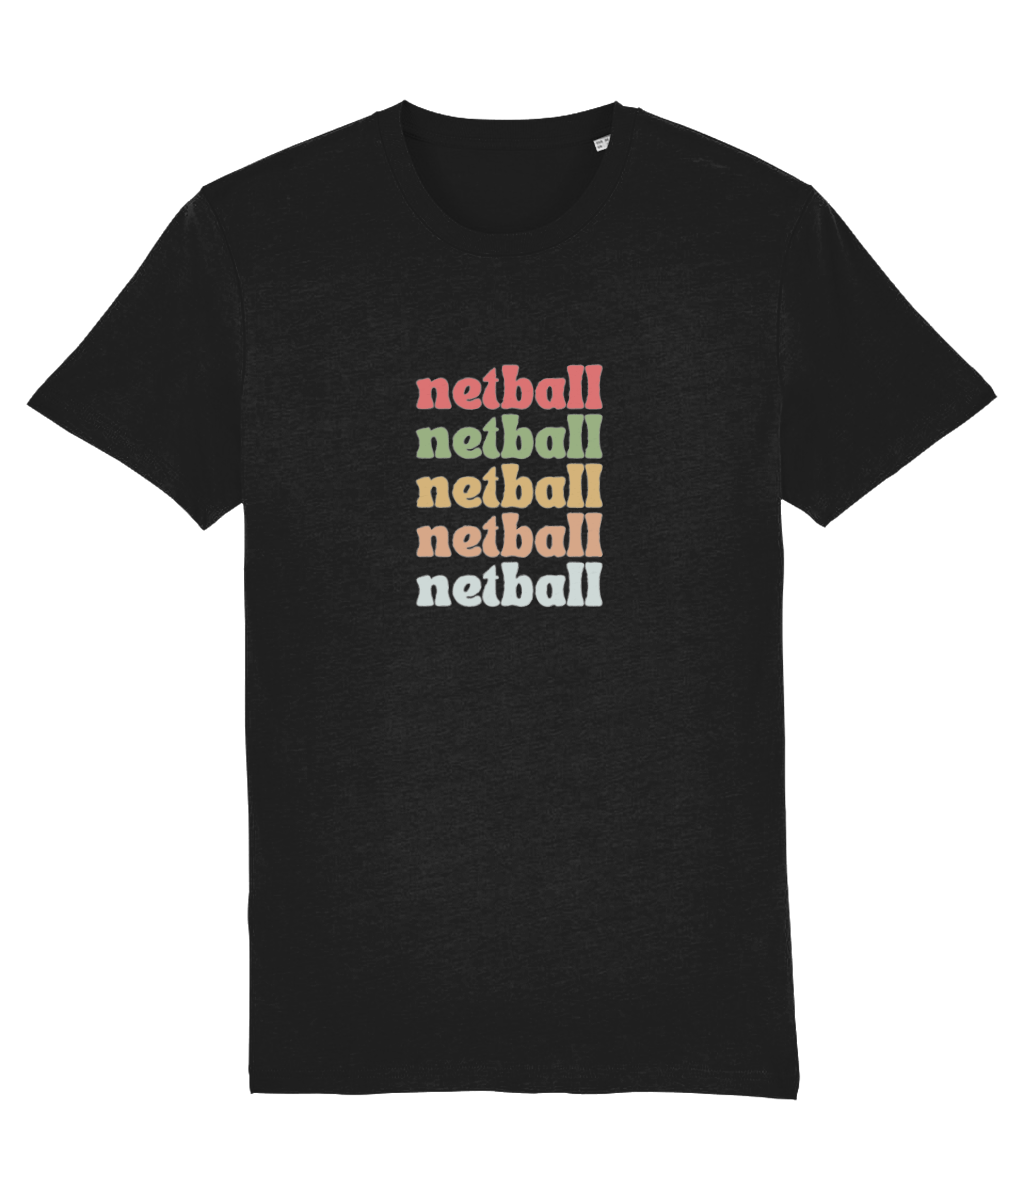 Retro Style Netball T-Shirt